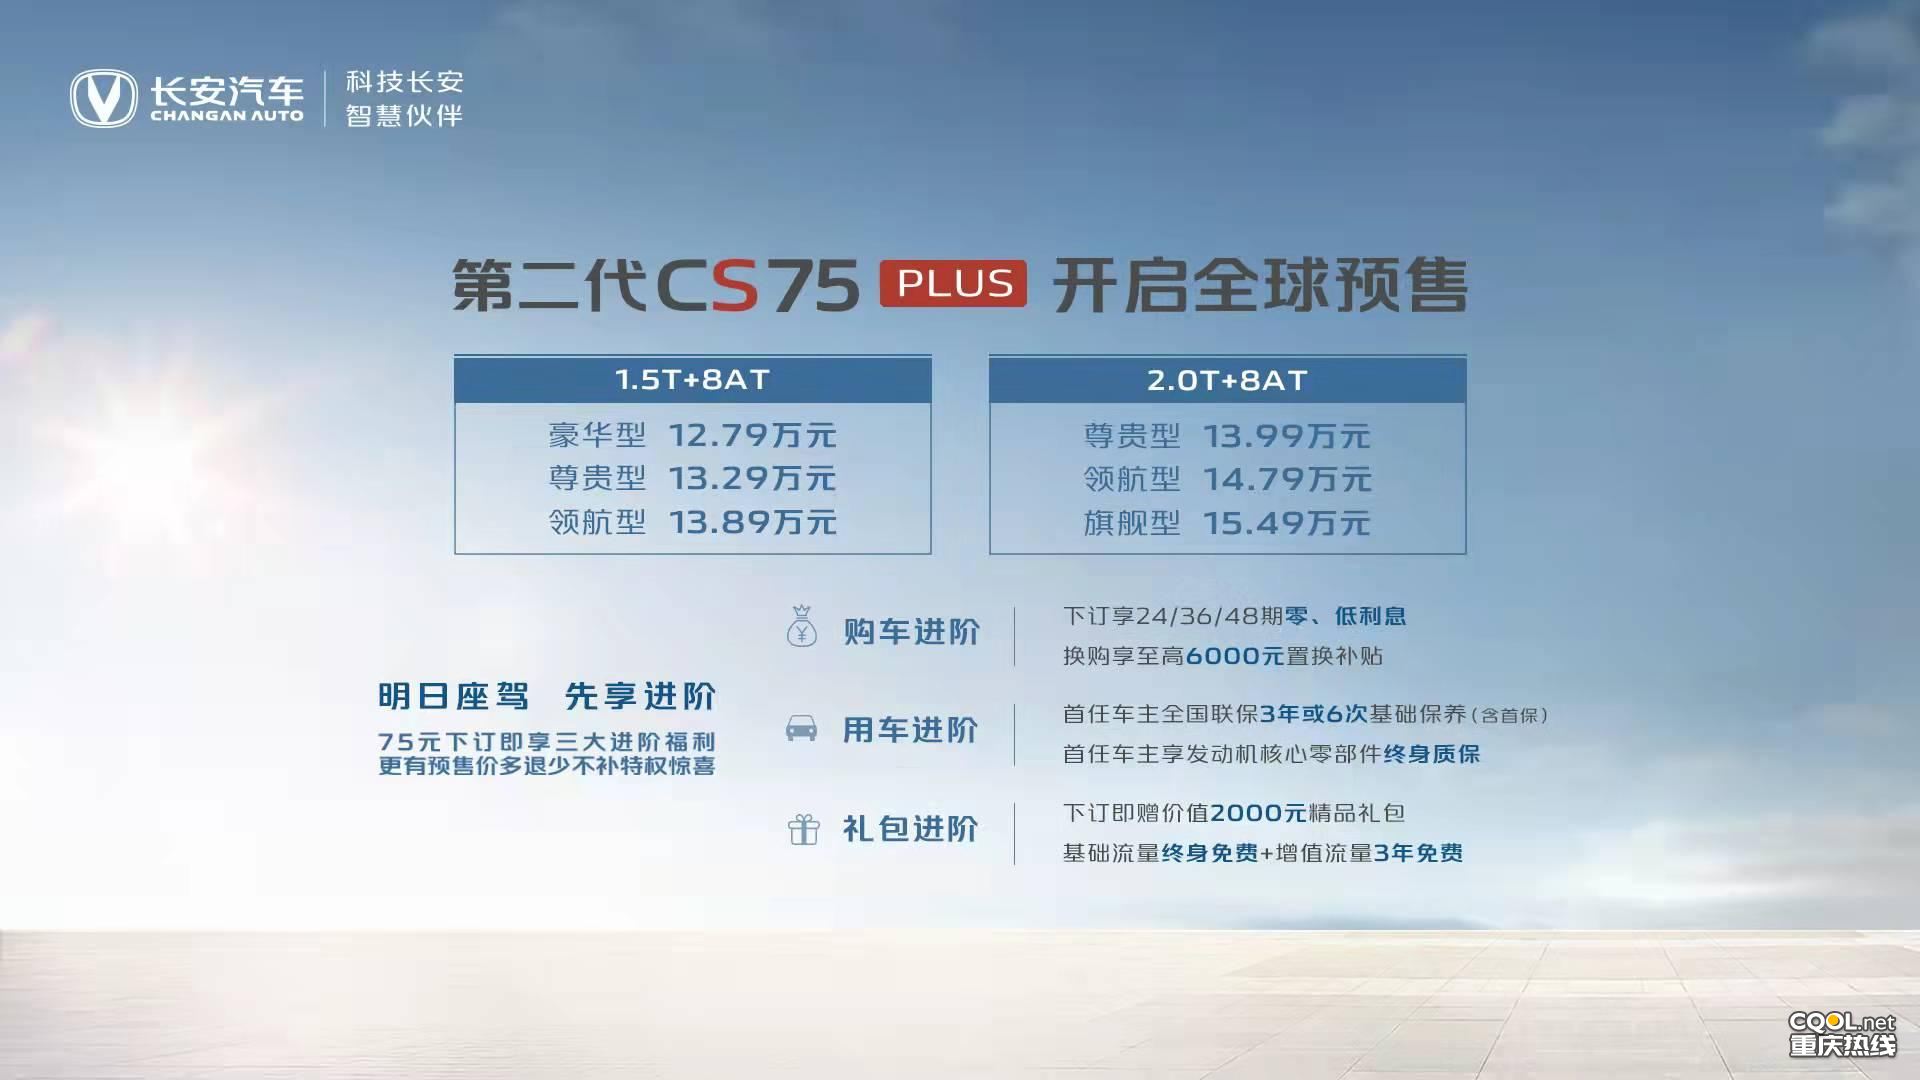 长安汽车召开“驭鉴·鲸奇——第二代CS75PLUS线上预售发布会”